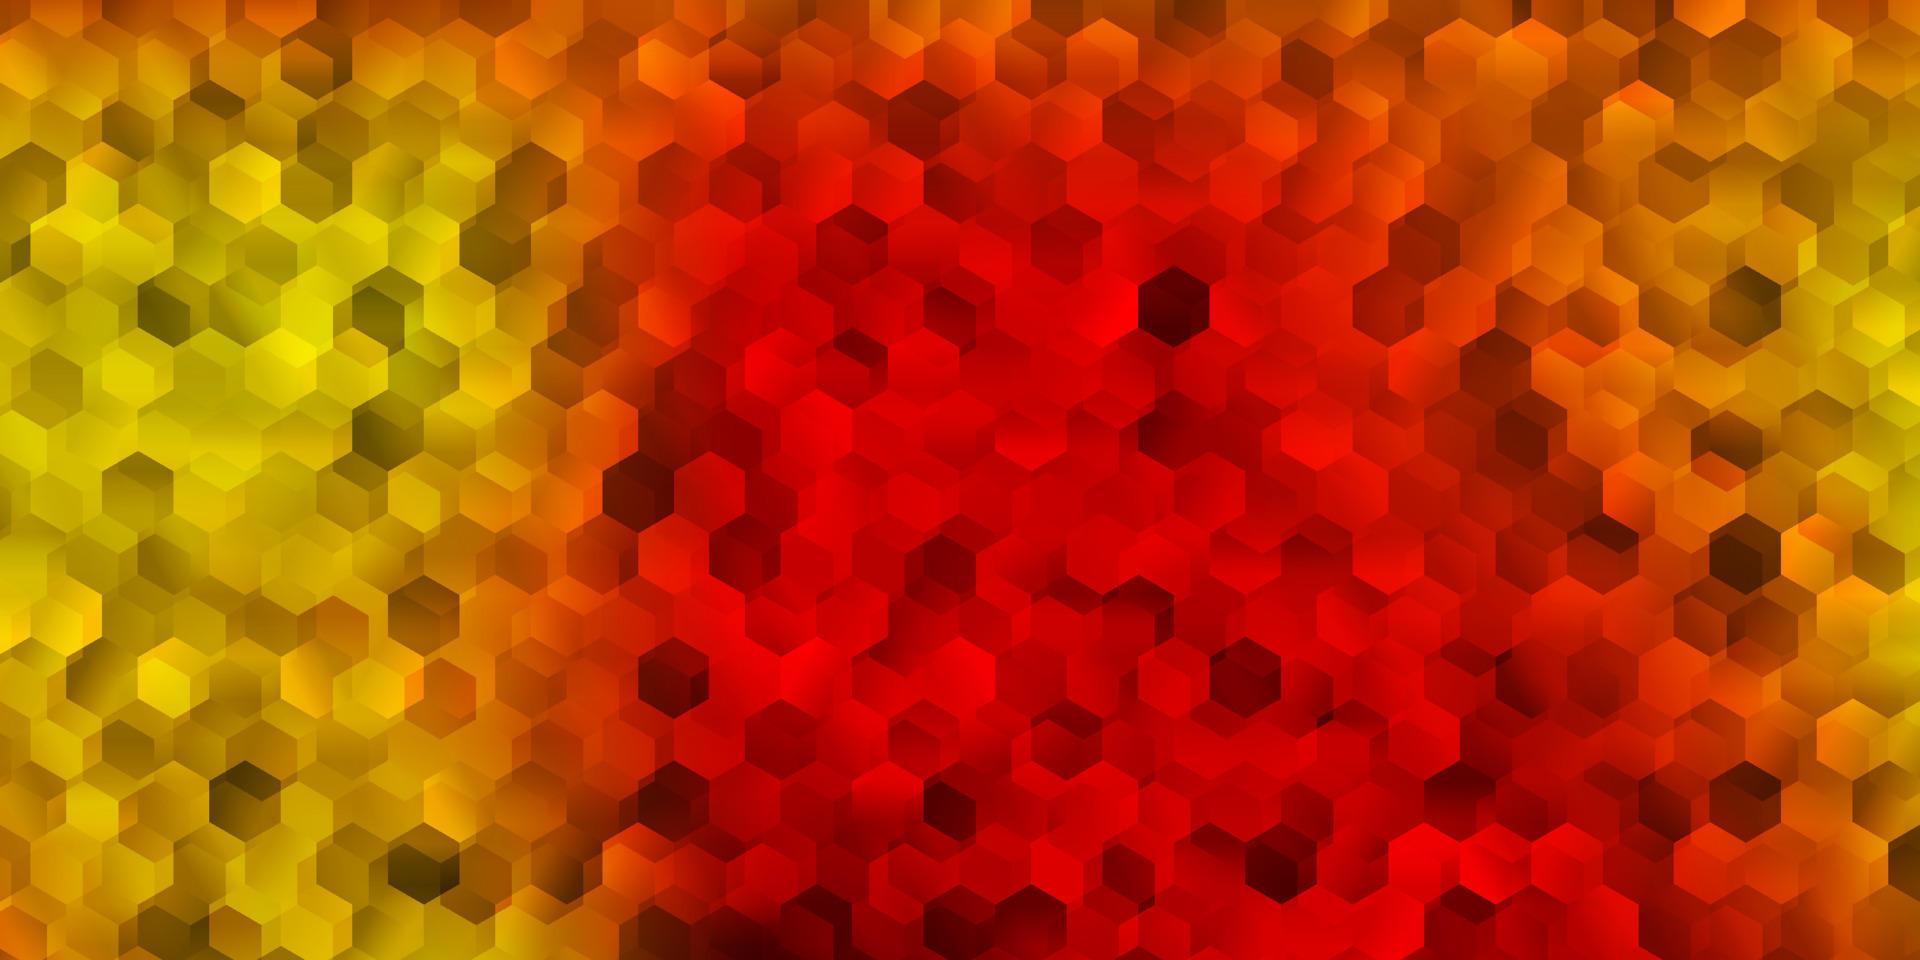 modelo de vetor vermelho e amarelo claro em estilo hexagonal.